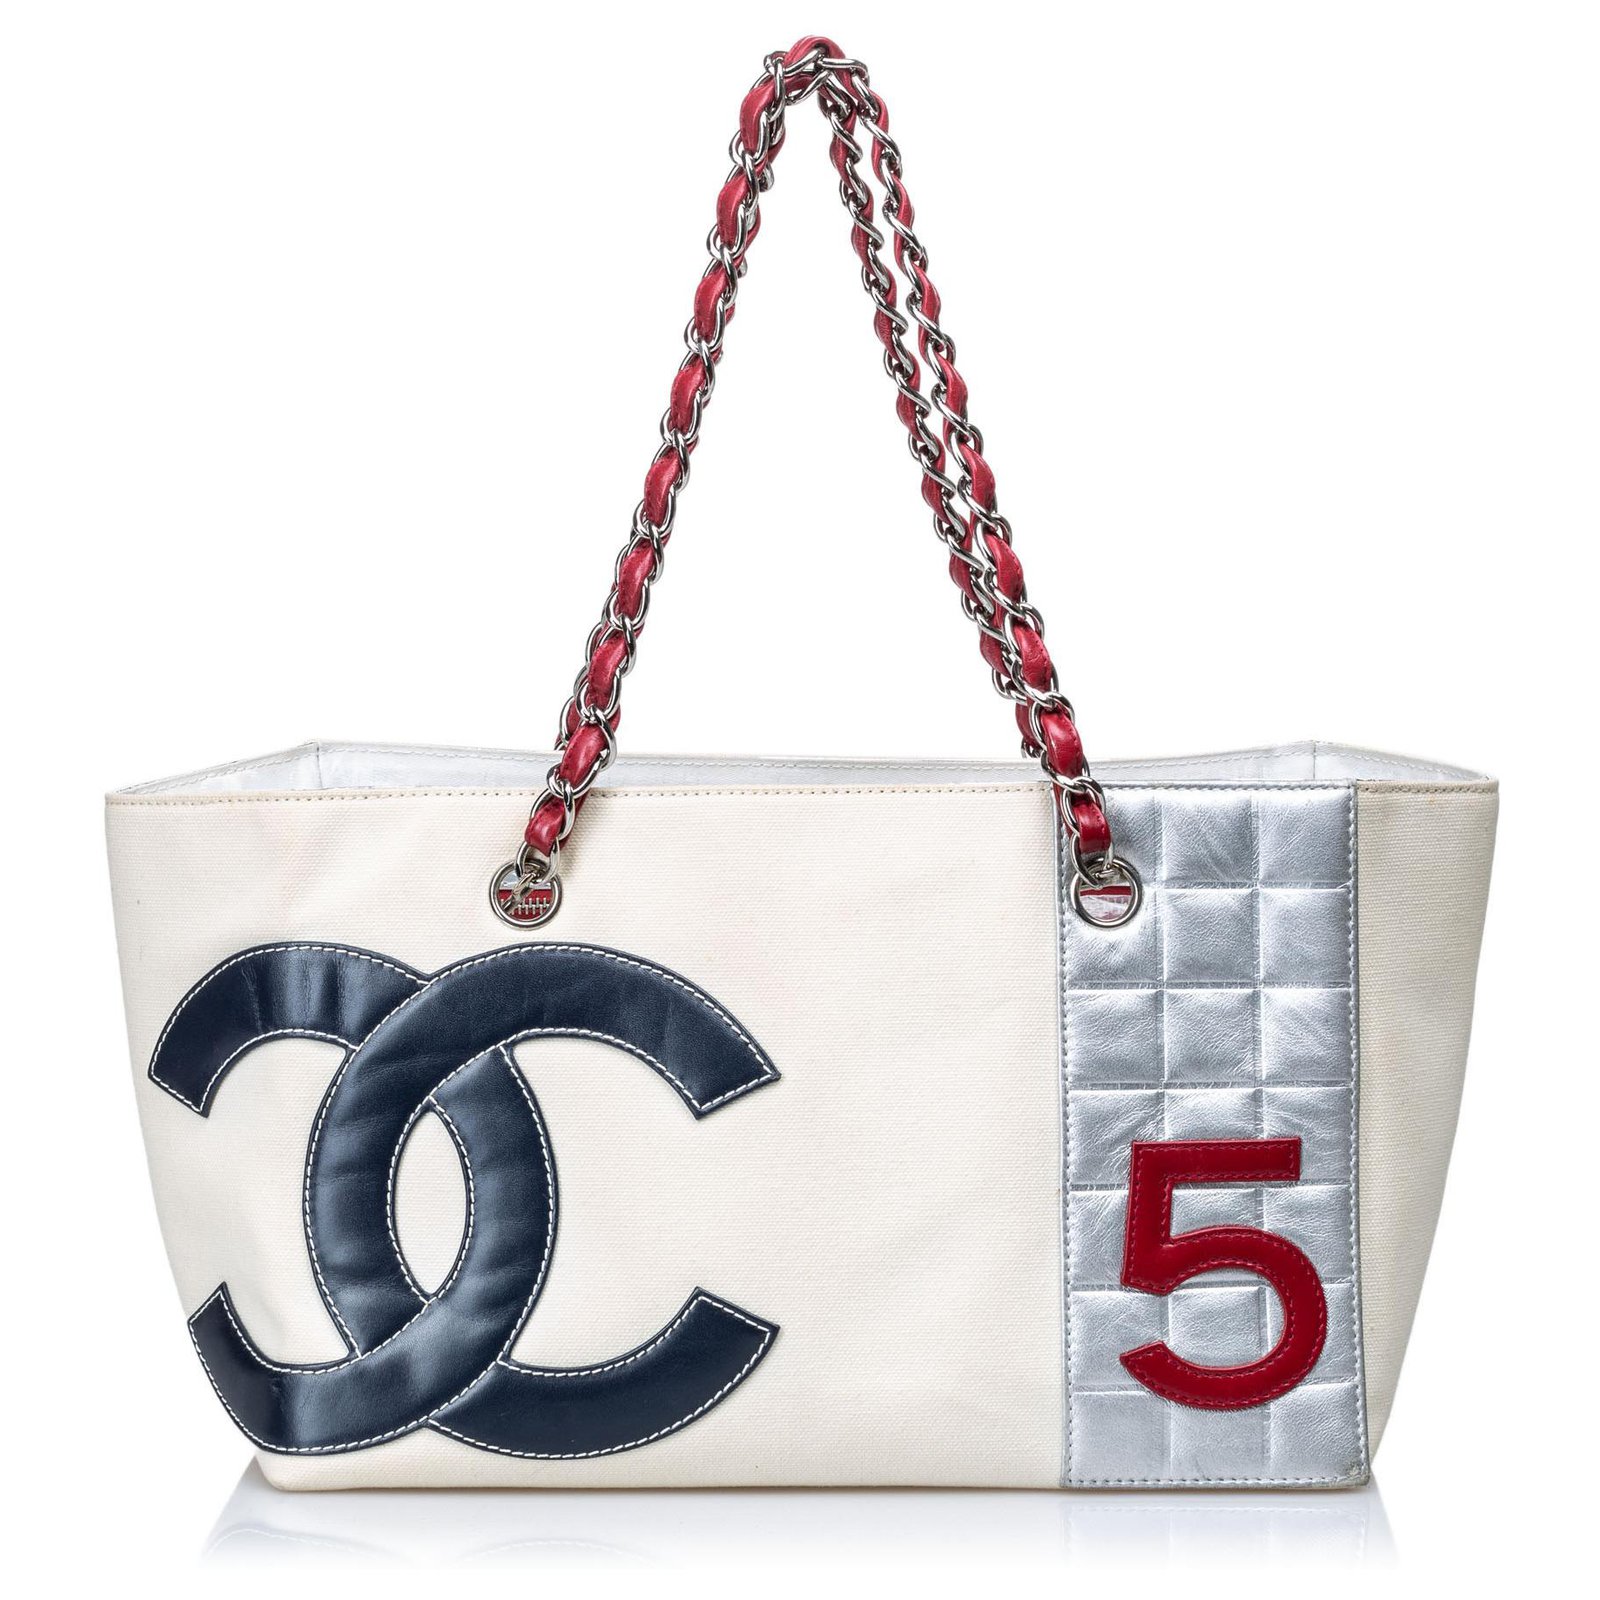 Chanel White & Metallic Canvas No 5 Shopping Tote Q6B0410EWB002